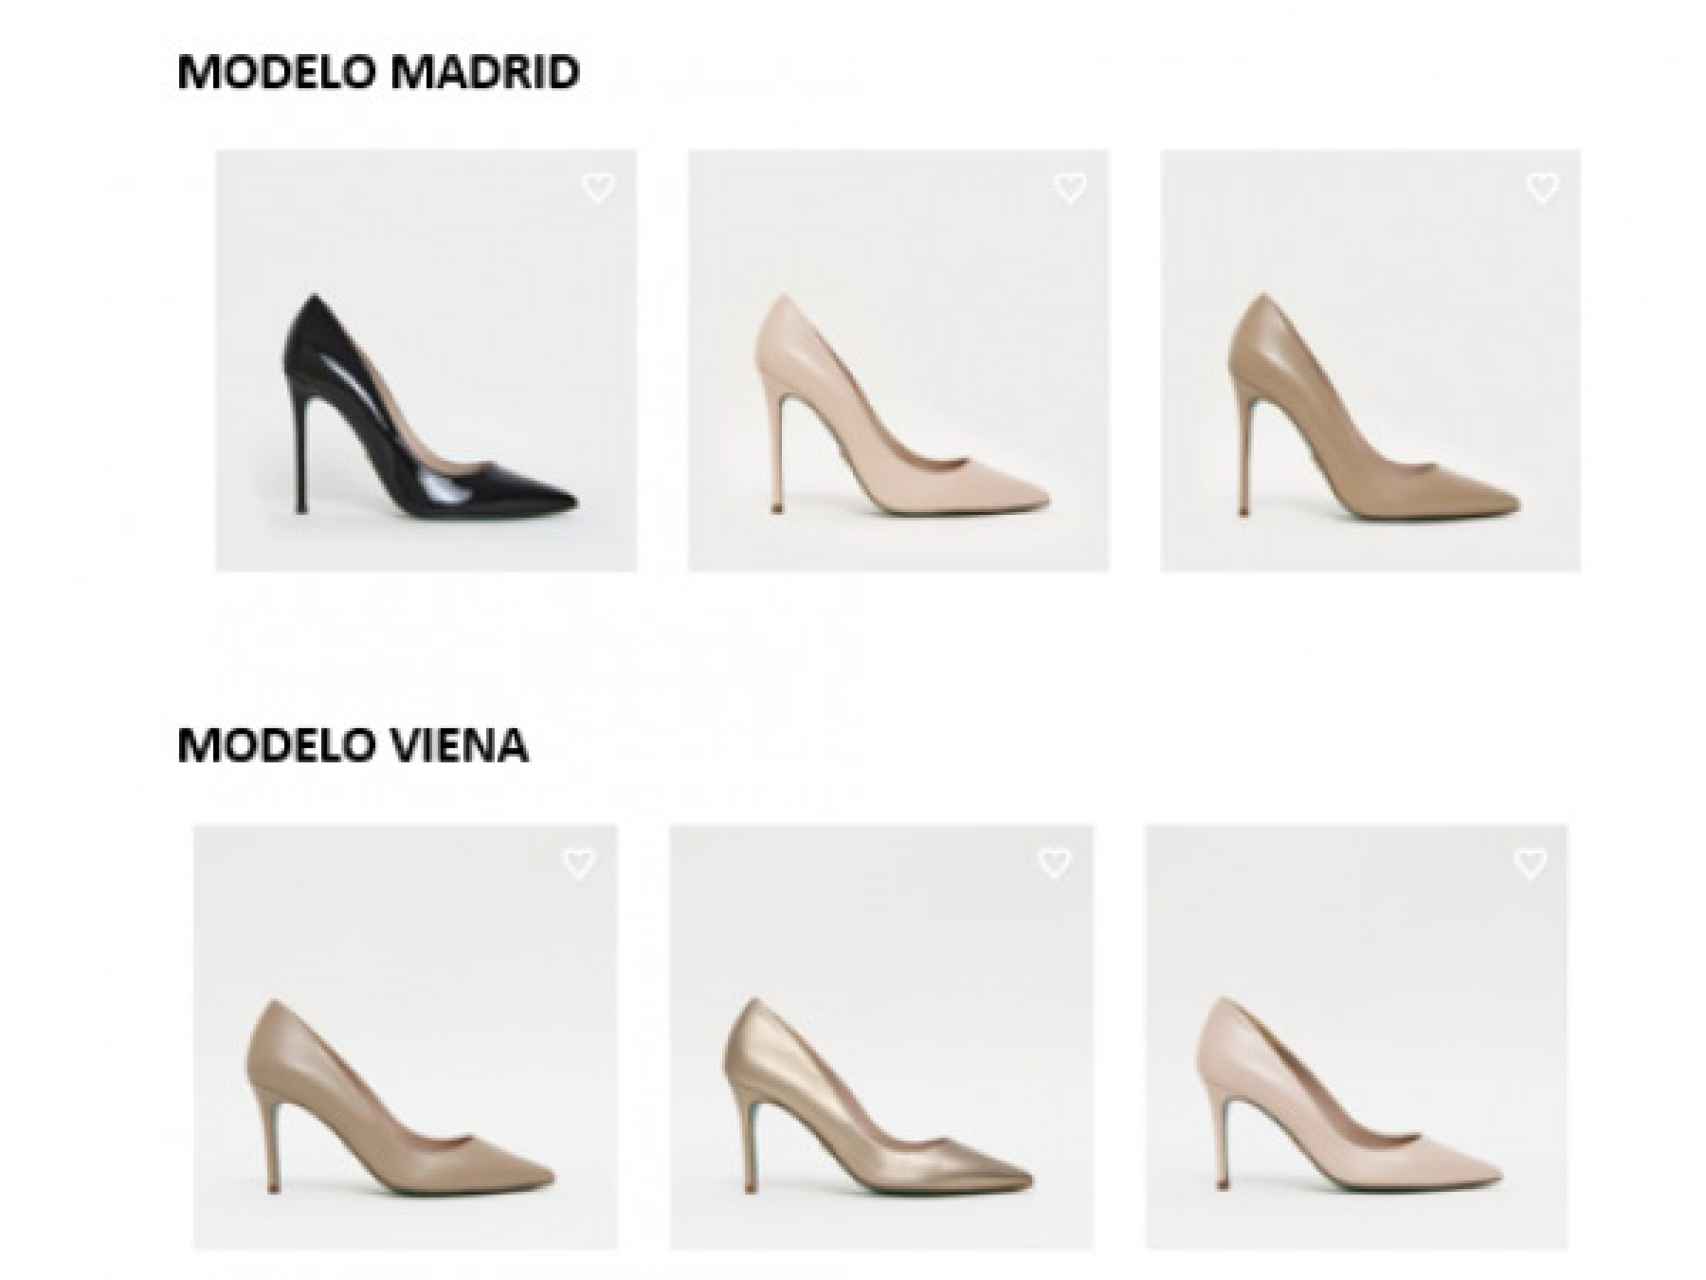 Los modelos de 'stillettos' Madrid y Viena, de la firma Omais.